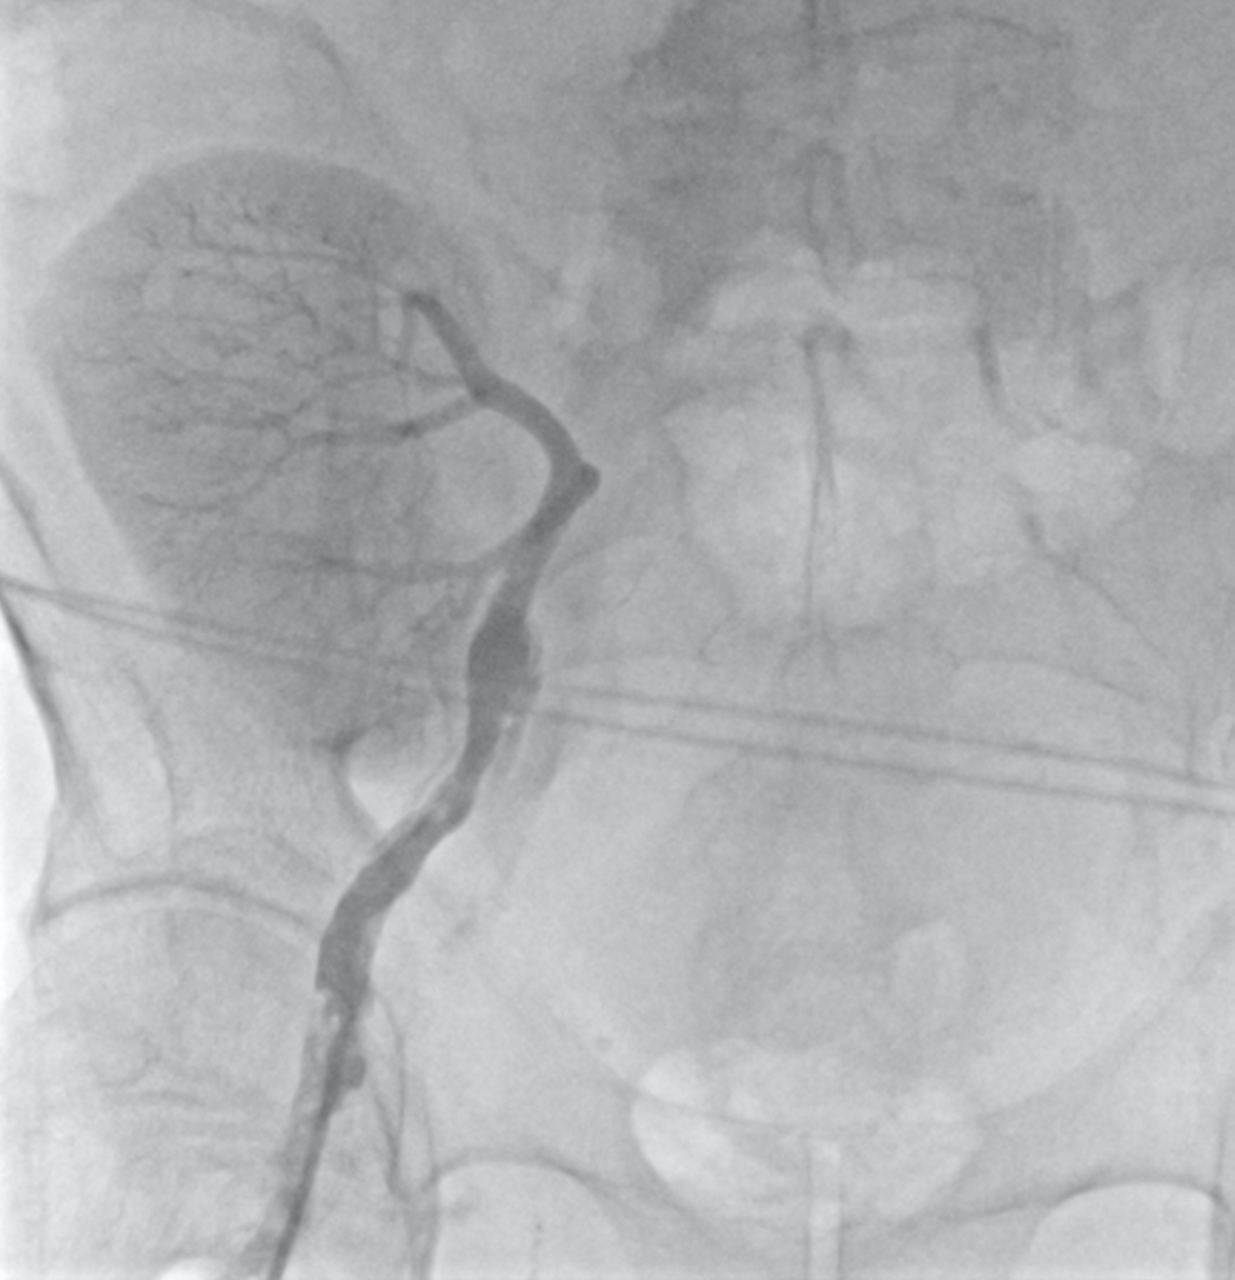 Ретроградная ангиография бедренной артерии справа